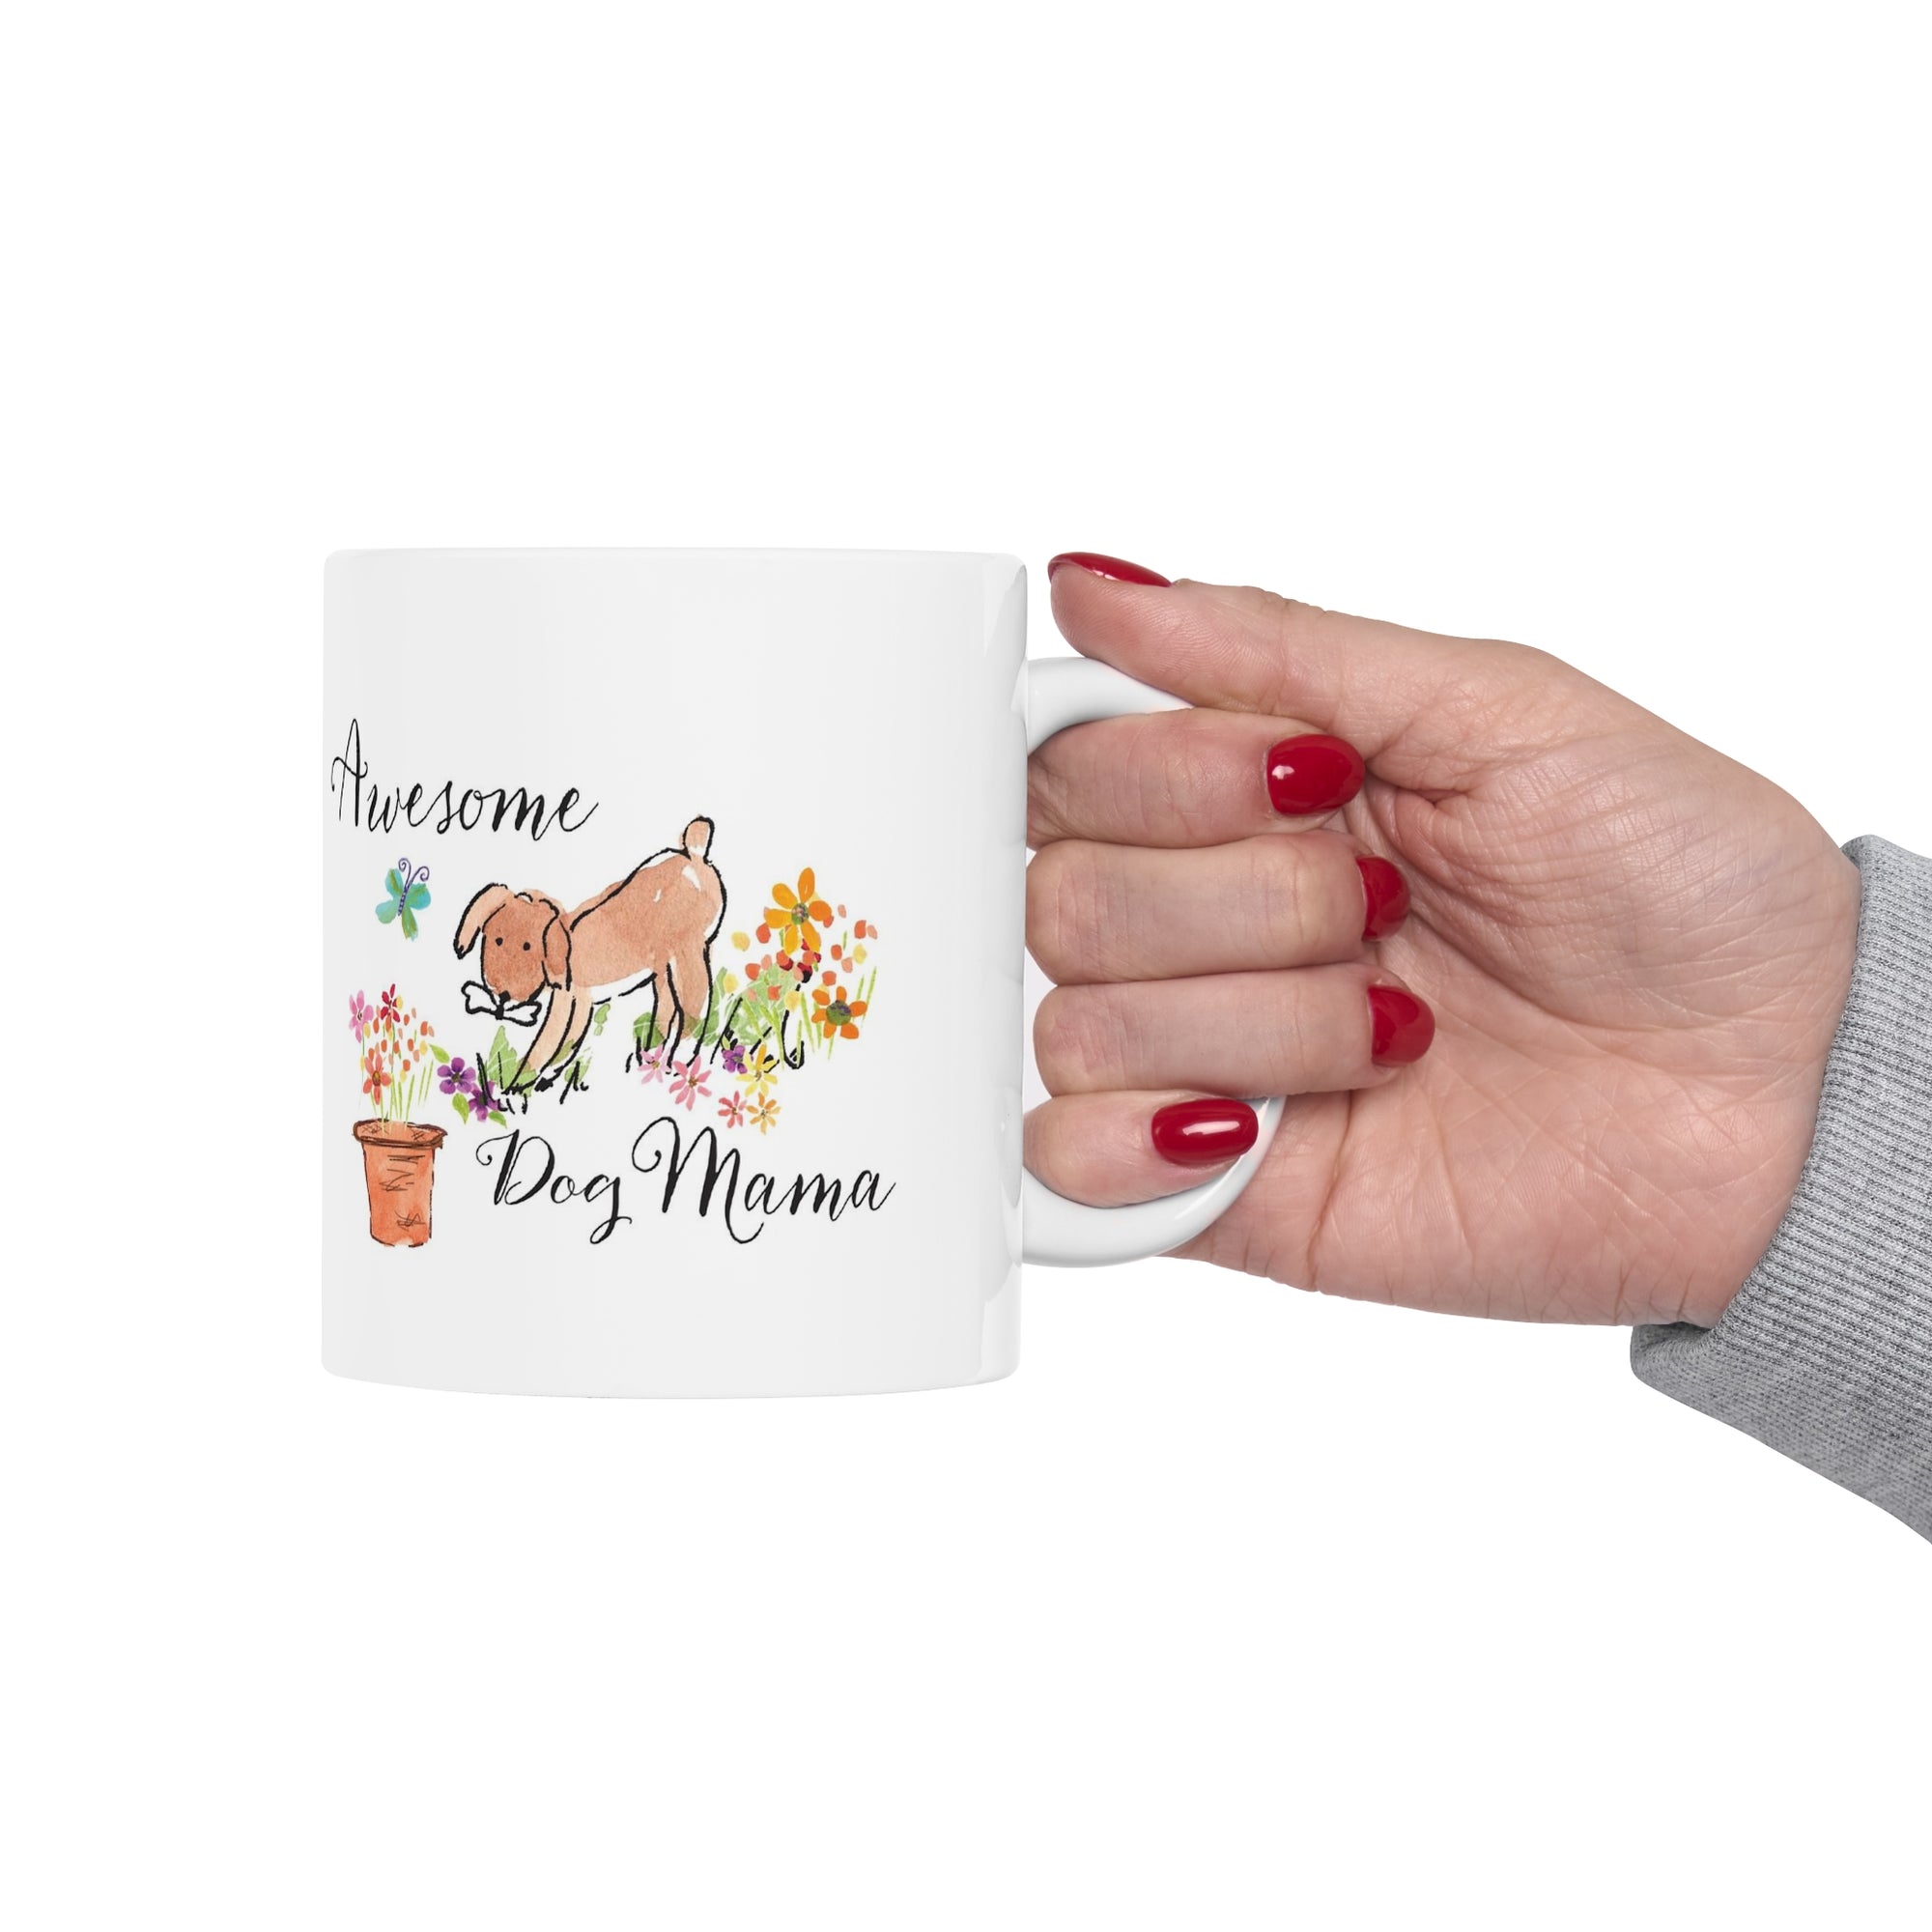 Awesome Dog Mama Ceramic Mug 11oz